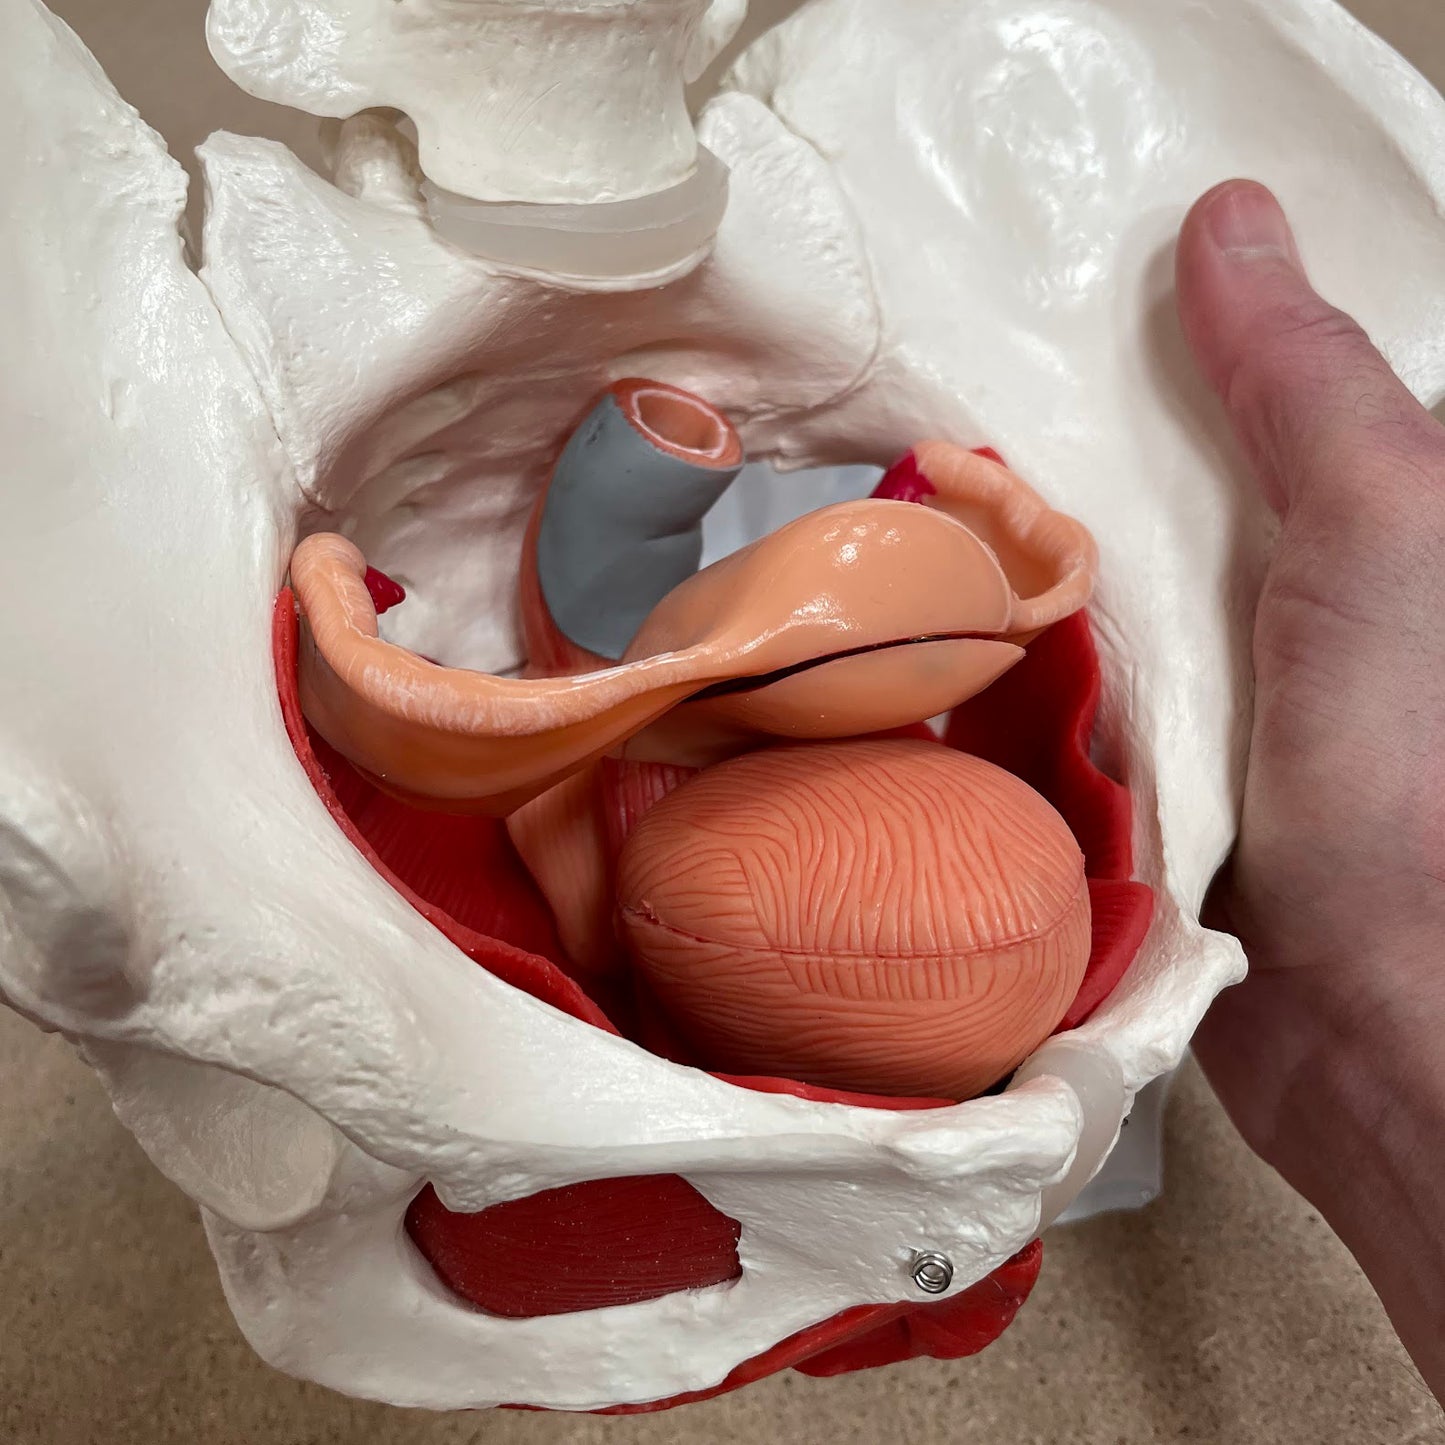 Bækkenmodel der viser bækken-bunden, de indre og ydre køns-organer samt blæren hos kvinden